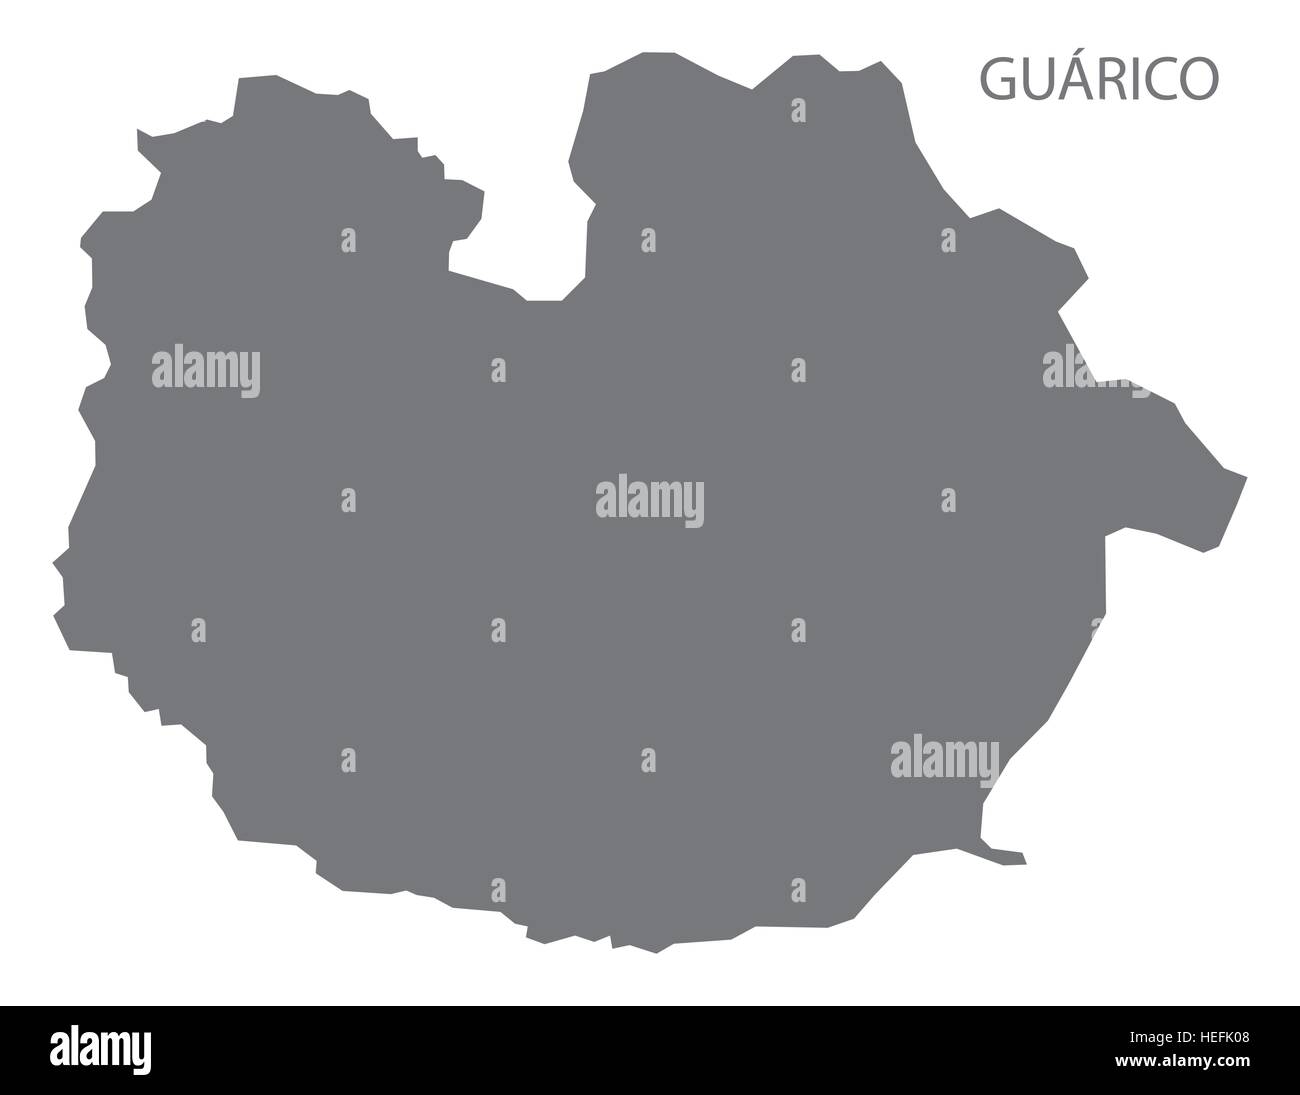 Guarico Venezuela Map in grey Stock Vector